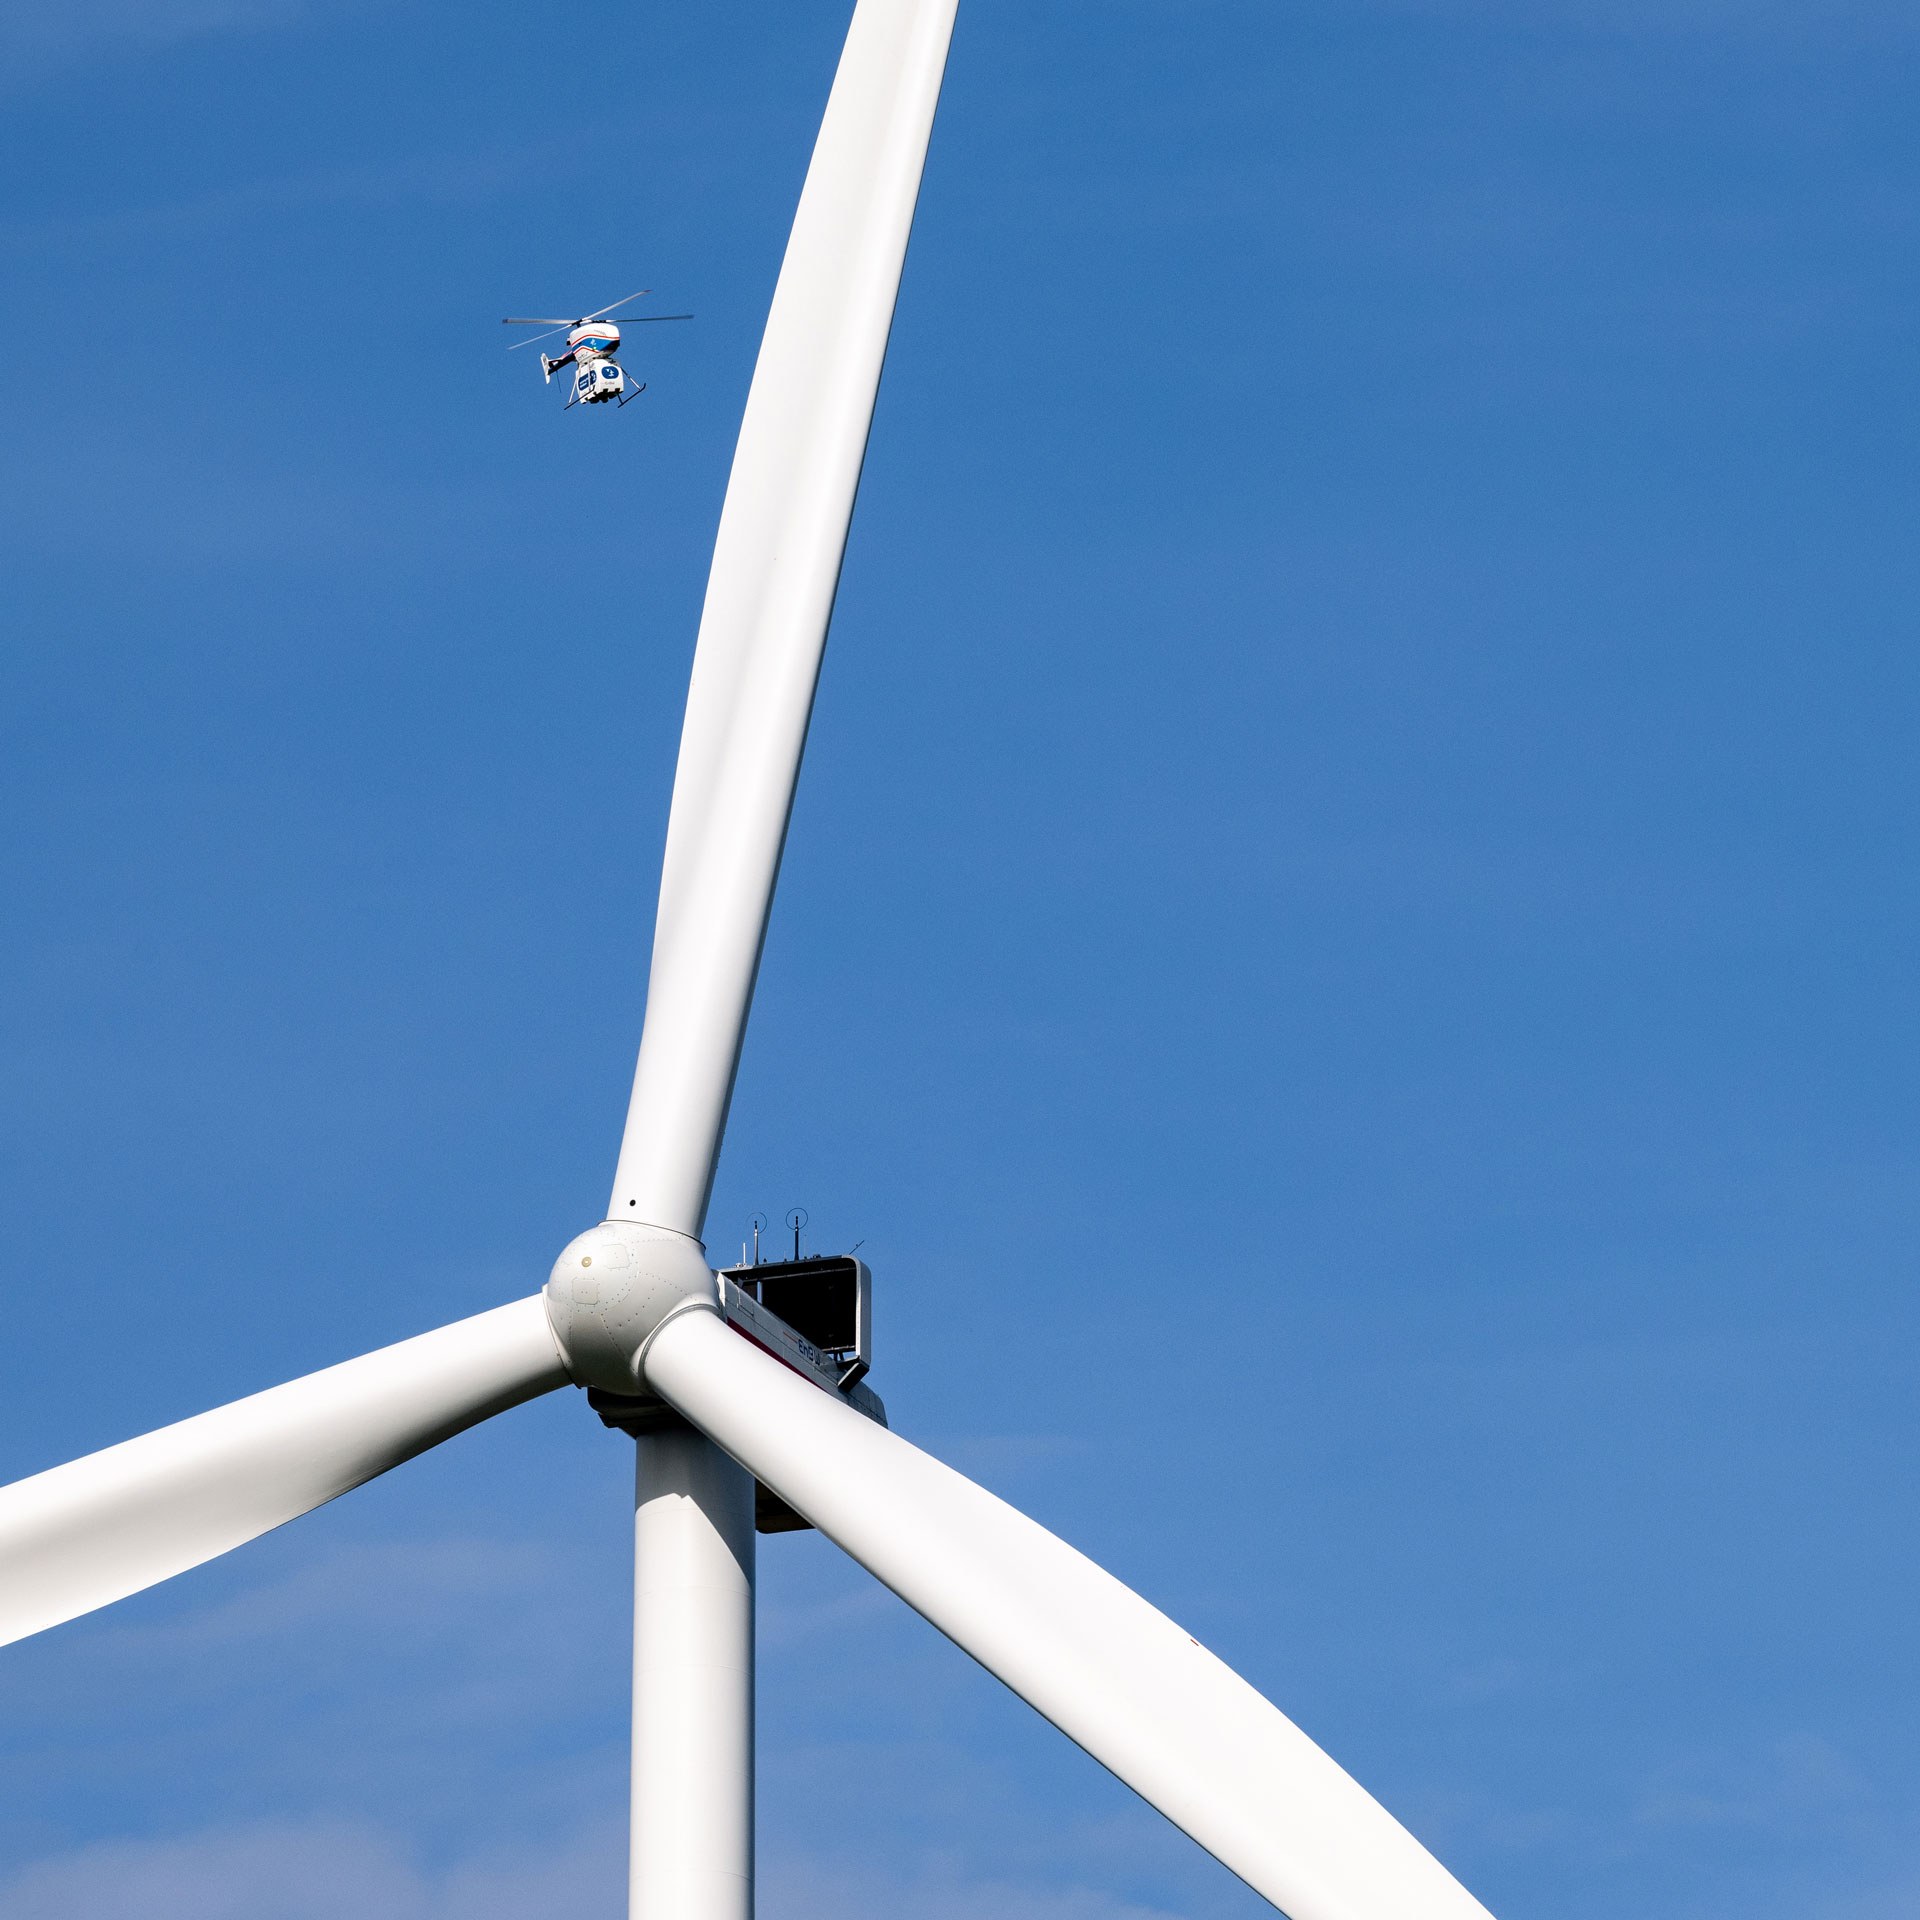 Der unbemannte DLR-Kleinhubschrauber superARTIS hat Informationen mit der Windenergieanlage ausgetauscht, damit er sich sicher nähern kann. Für ein realistisches Szenario im Projekt „Upcoming Drones Windfarm“ haben die Forschenden eine Traglast am Fluggerät befestigt.